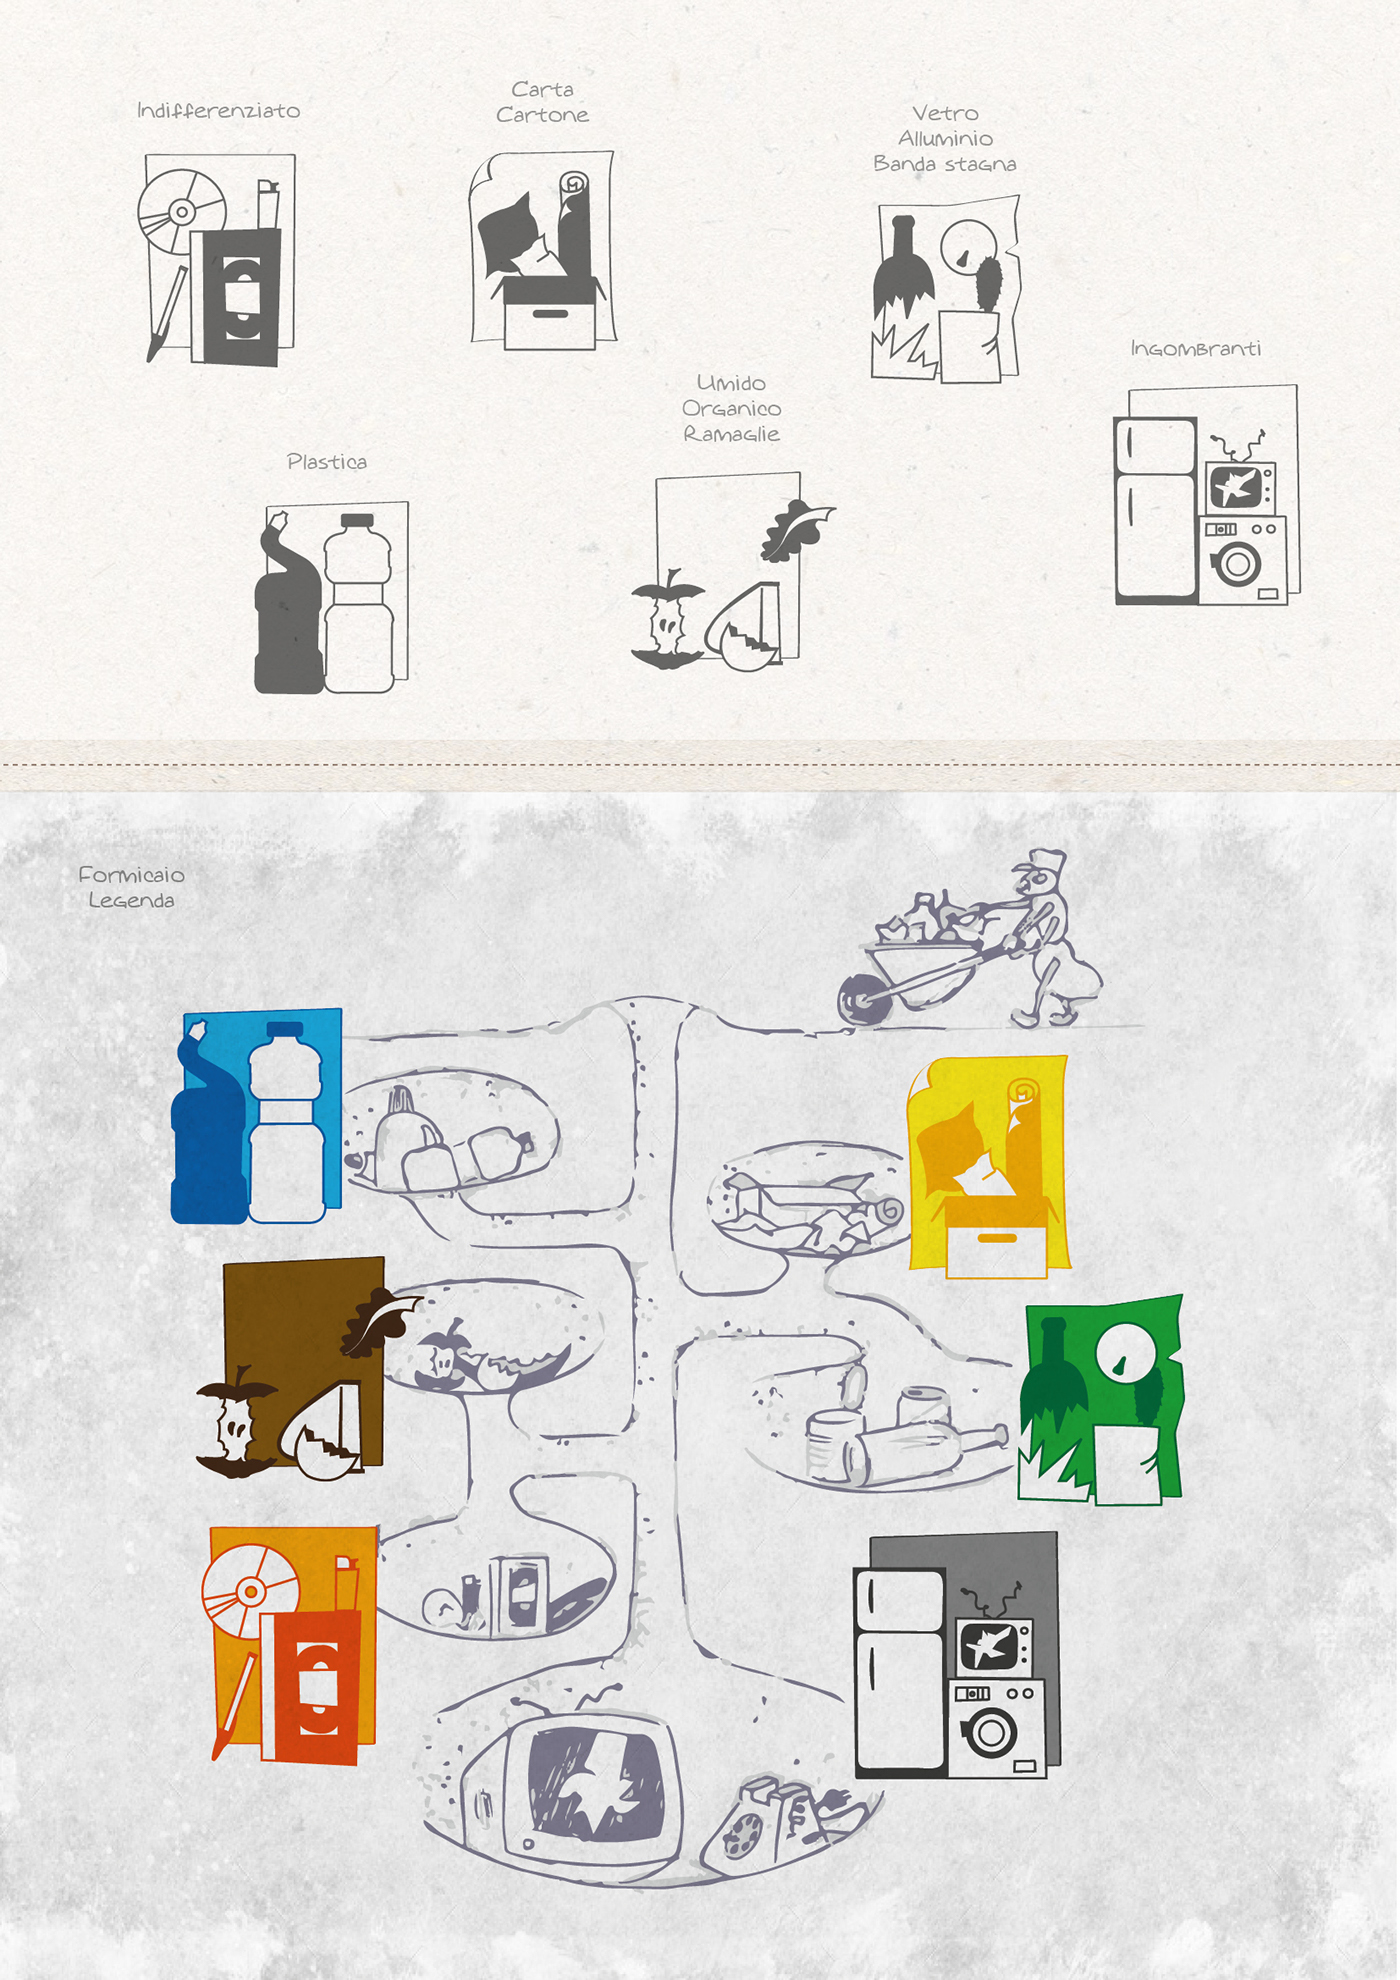 riciclaggio illustrazione formica campagna riciclaggio calendario RIFIUTI